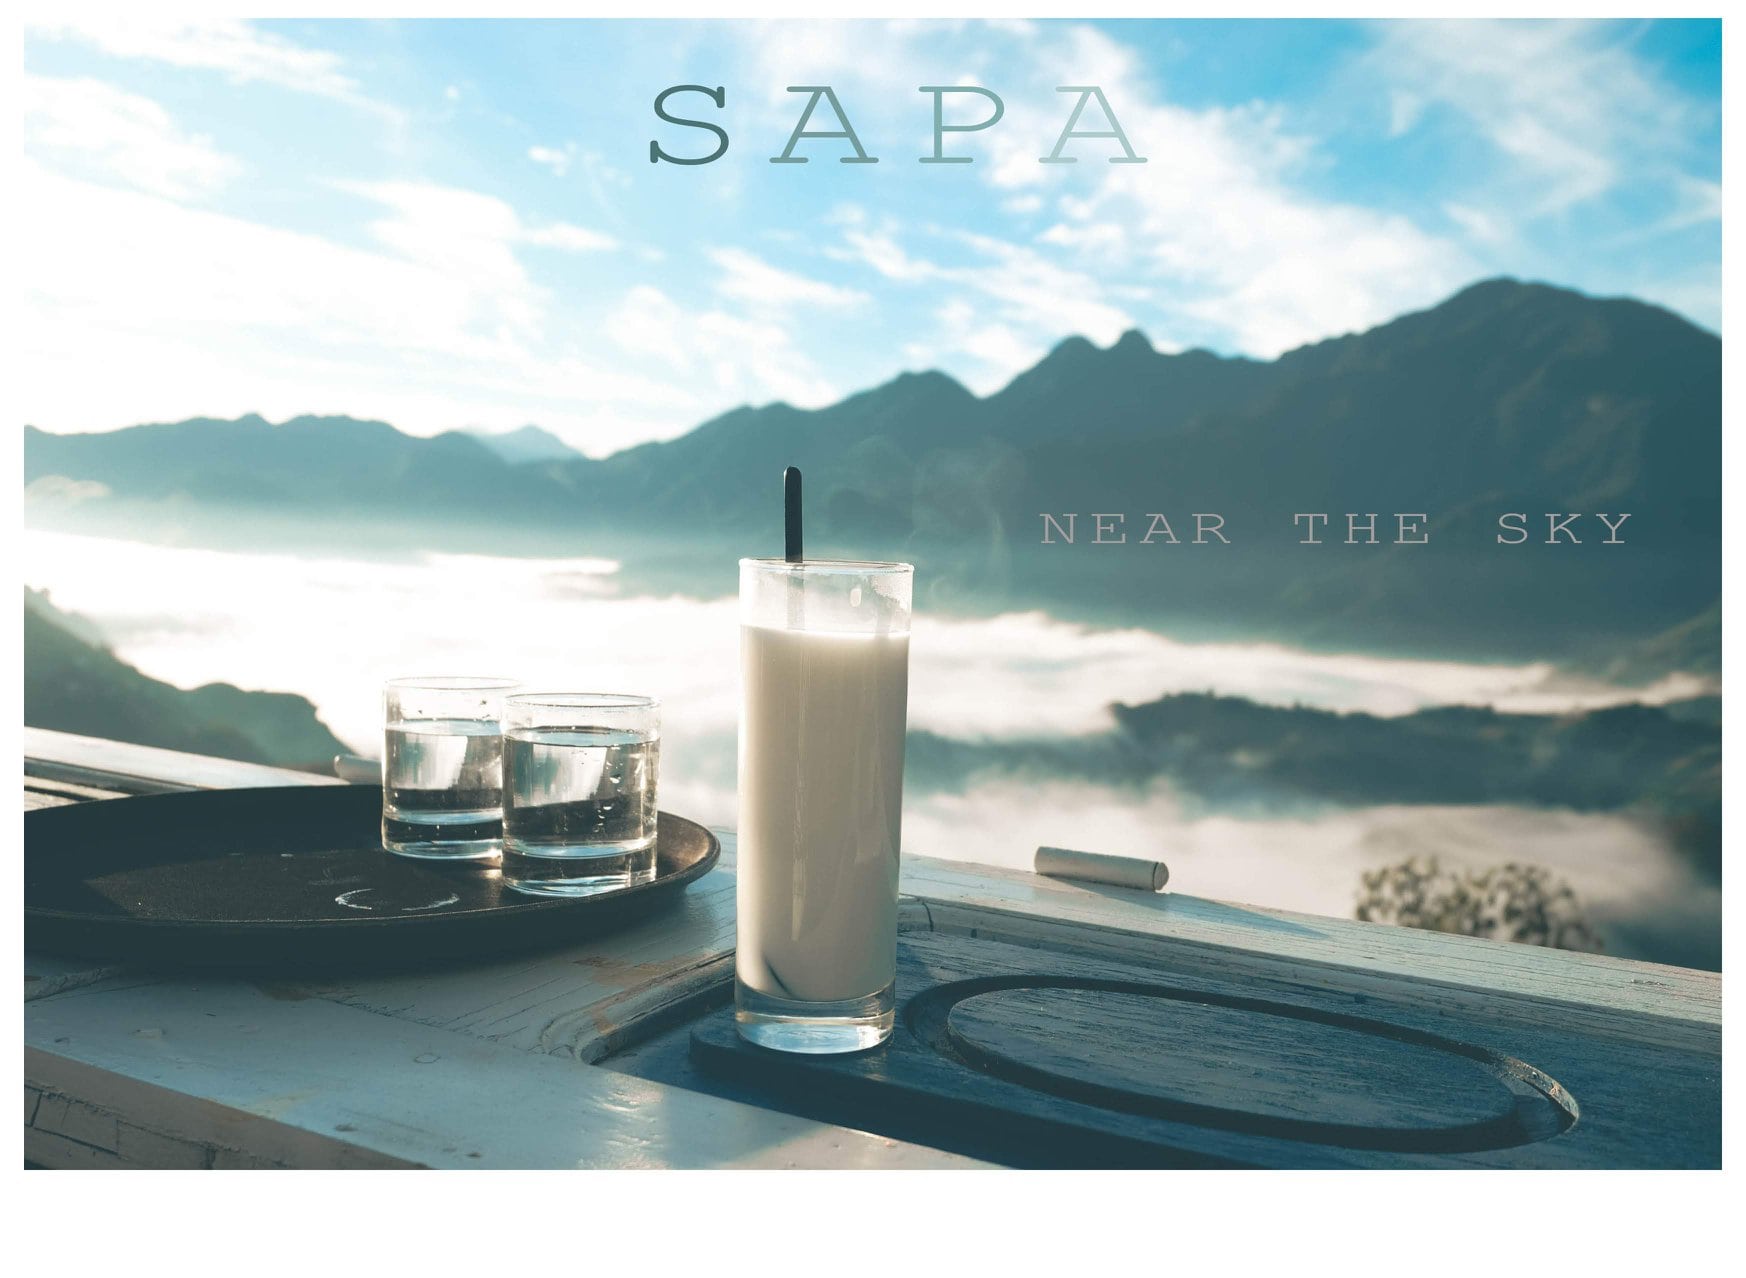 Kinh nghiệm du lịch Sapa 2019 : Đặc sản Sapa